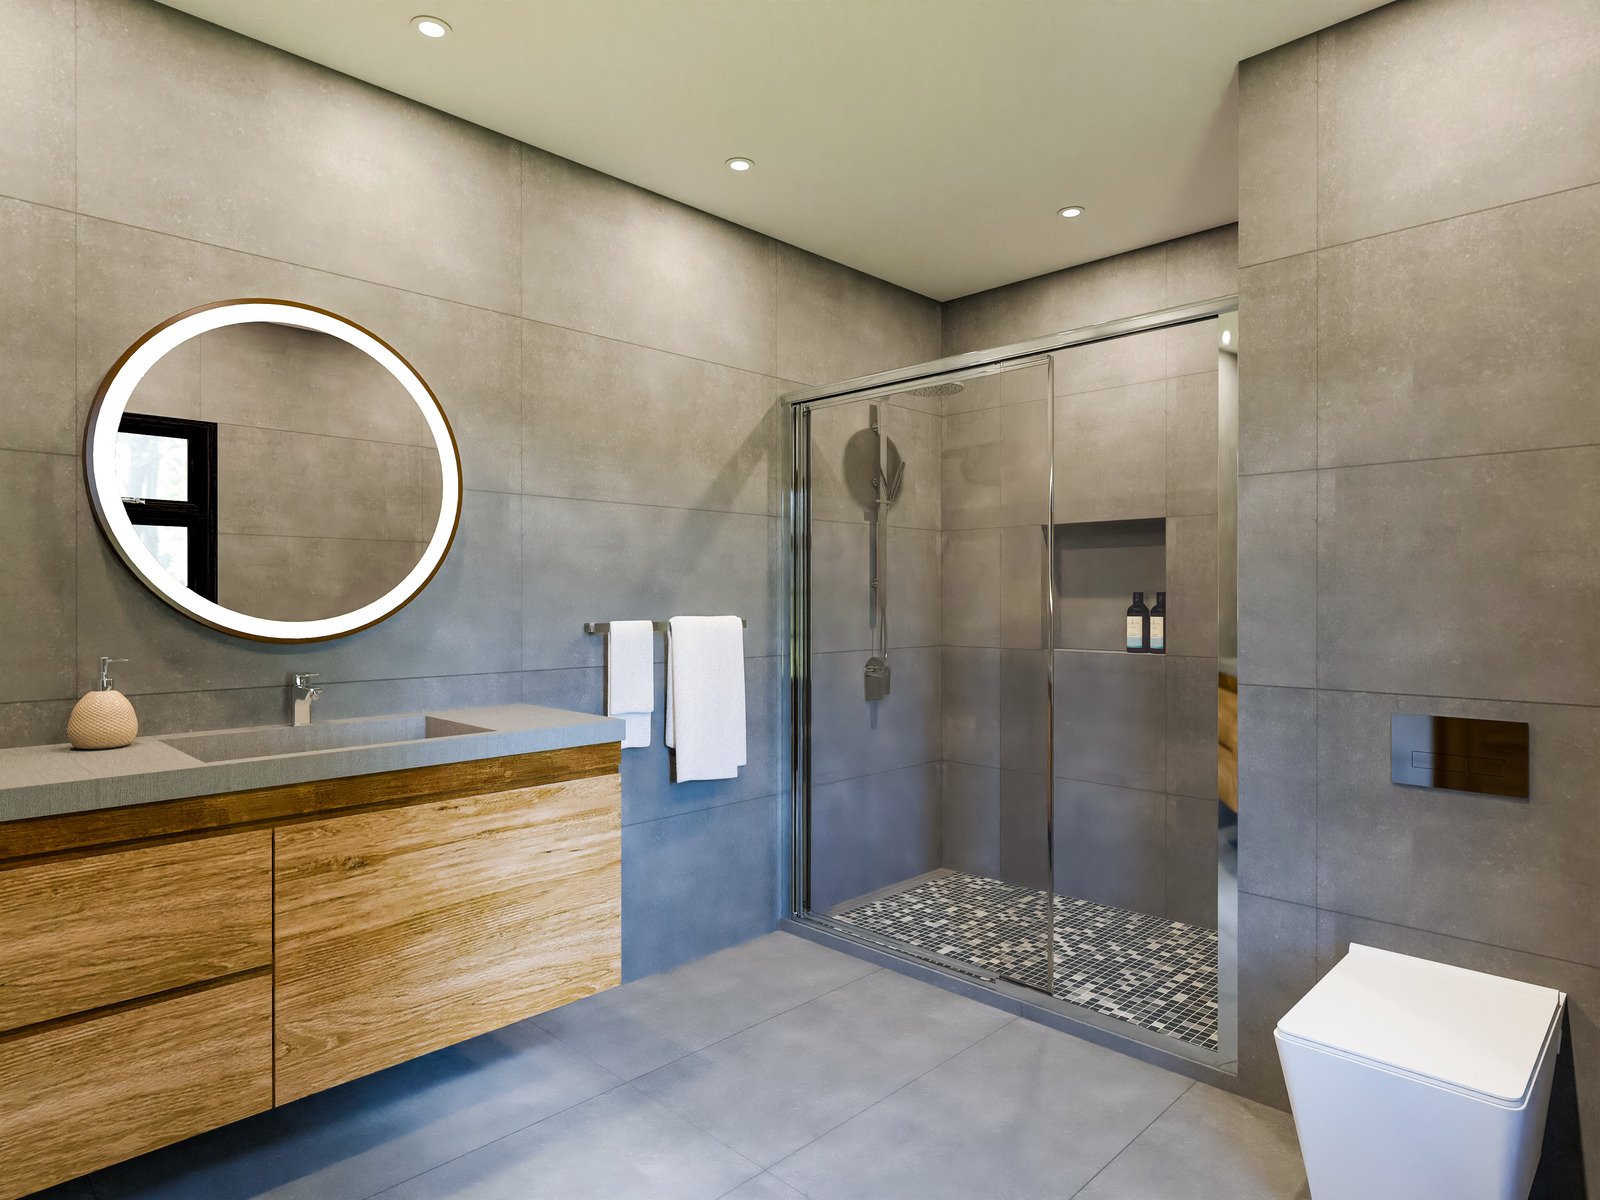  minimalistyczna łazienka w szarości